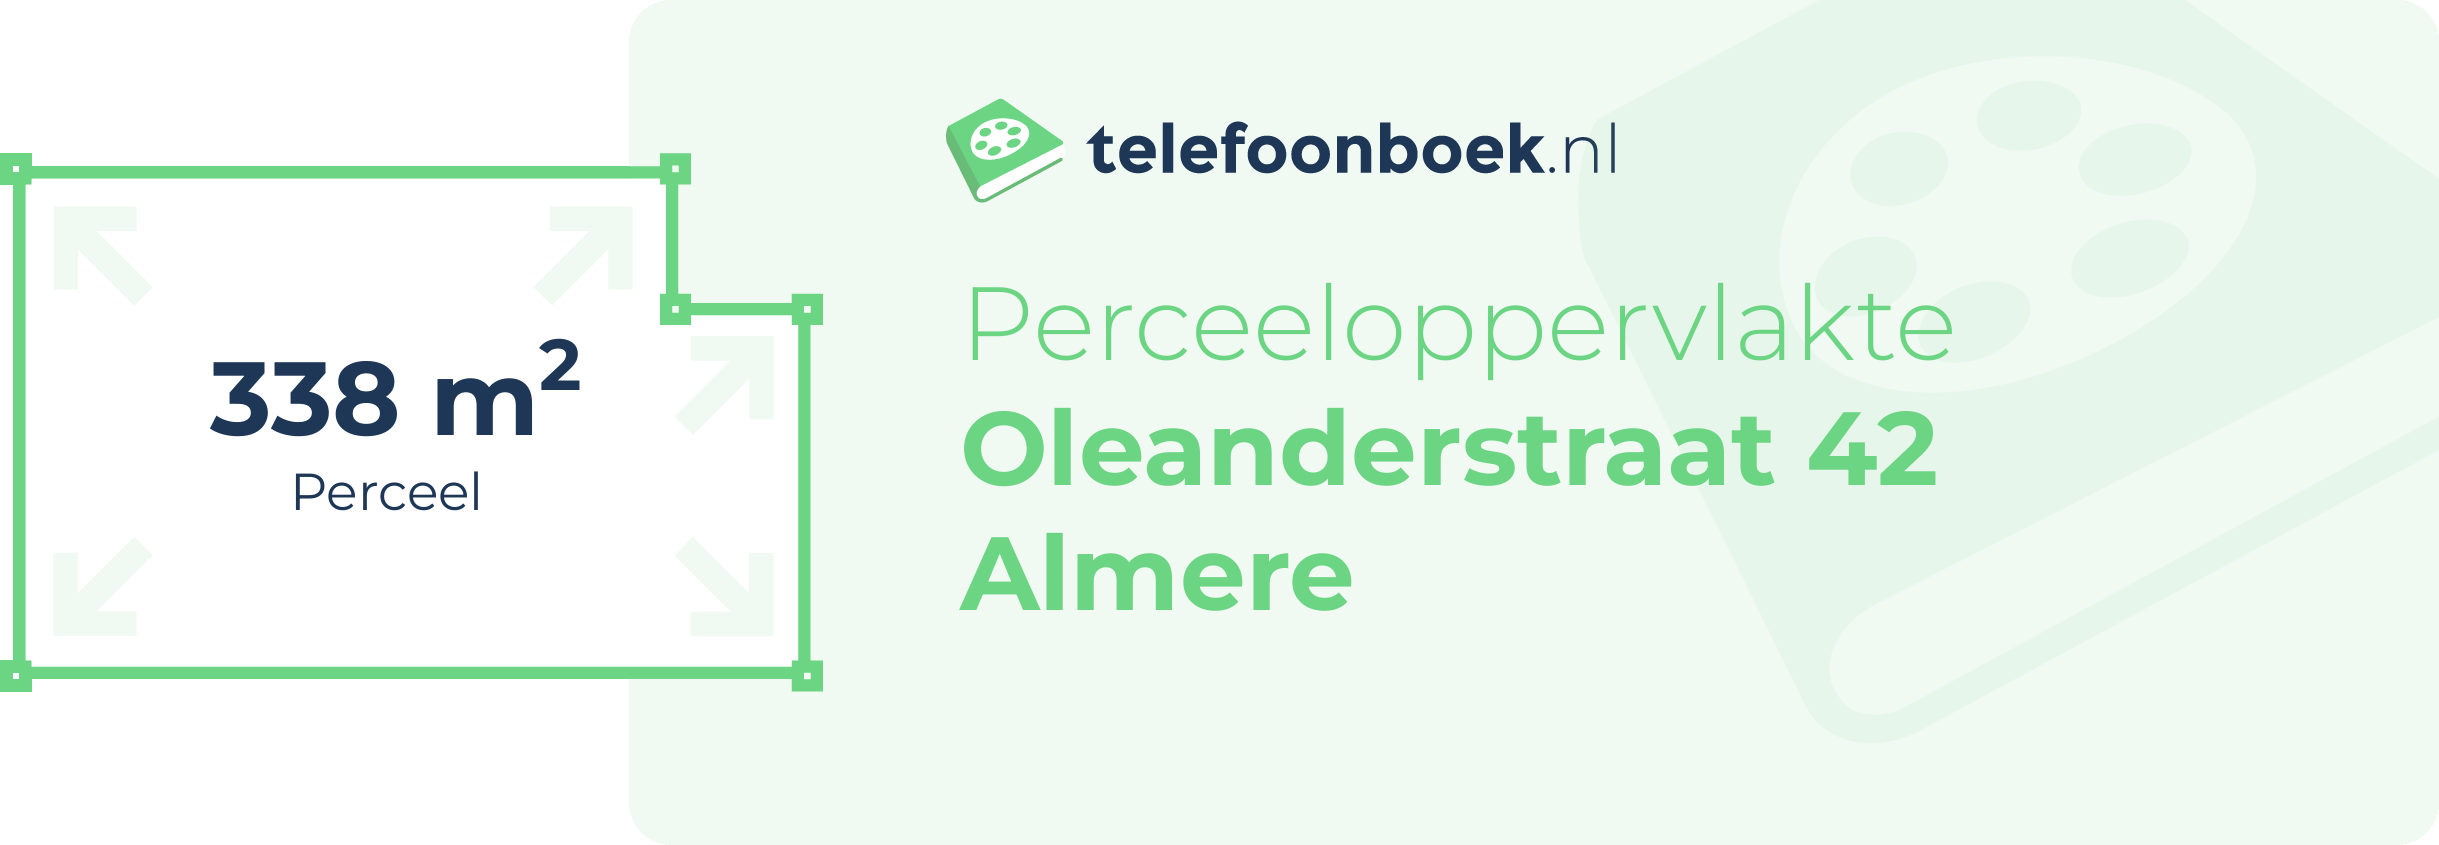 Perceeloppervlakte Oleanderstraat 42 Almere